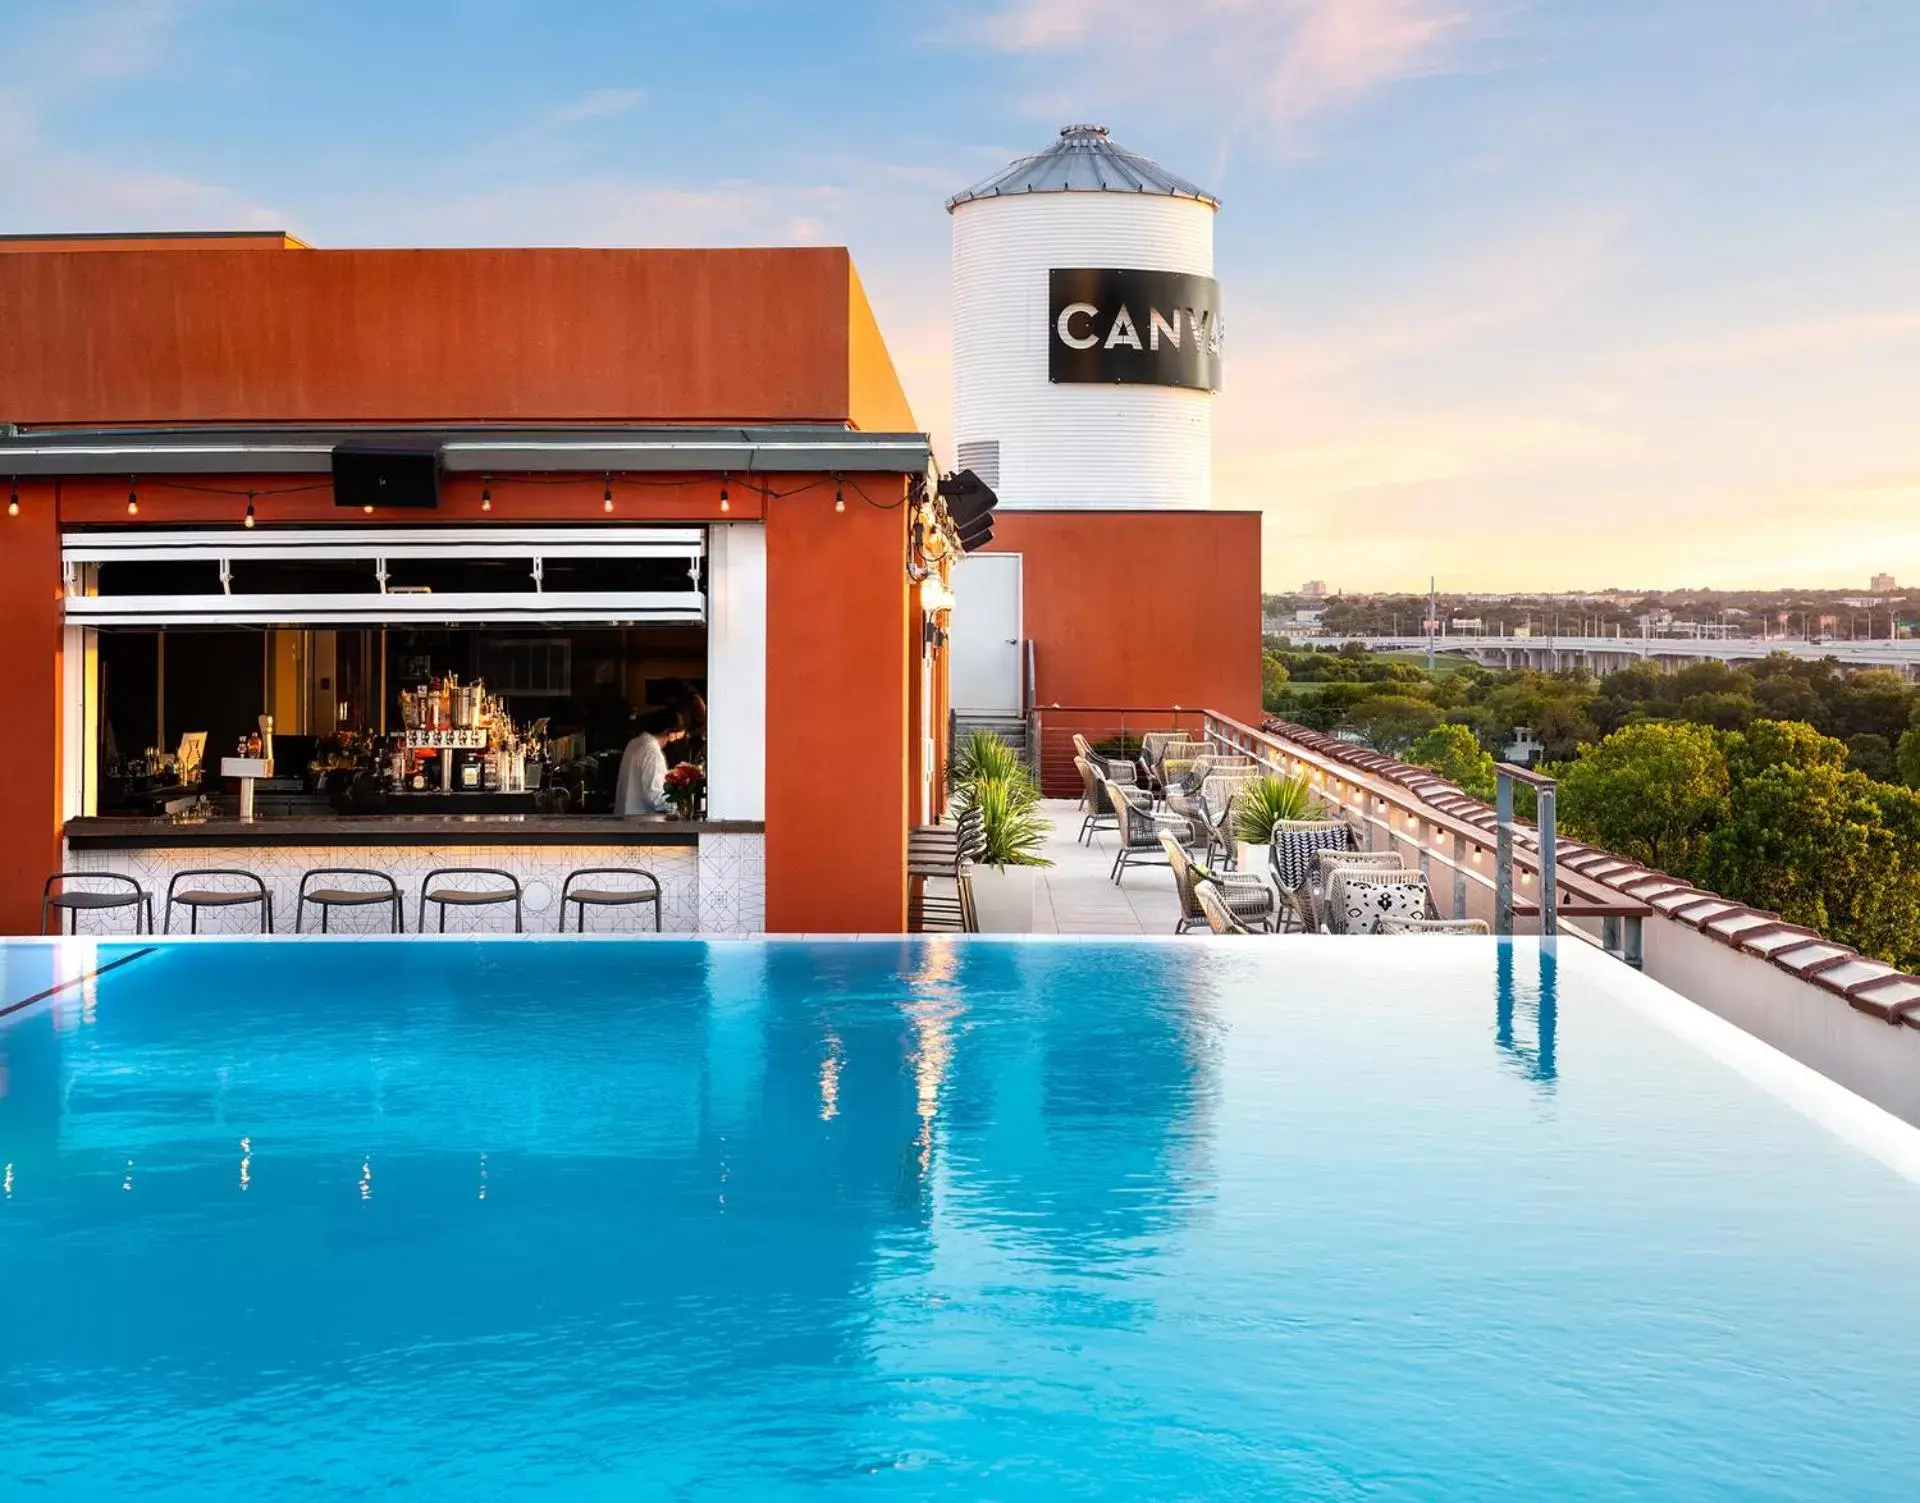 Patio, Swimming Pool in Canvas Hotel Dallas